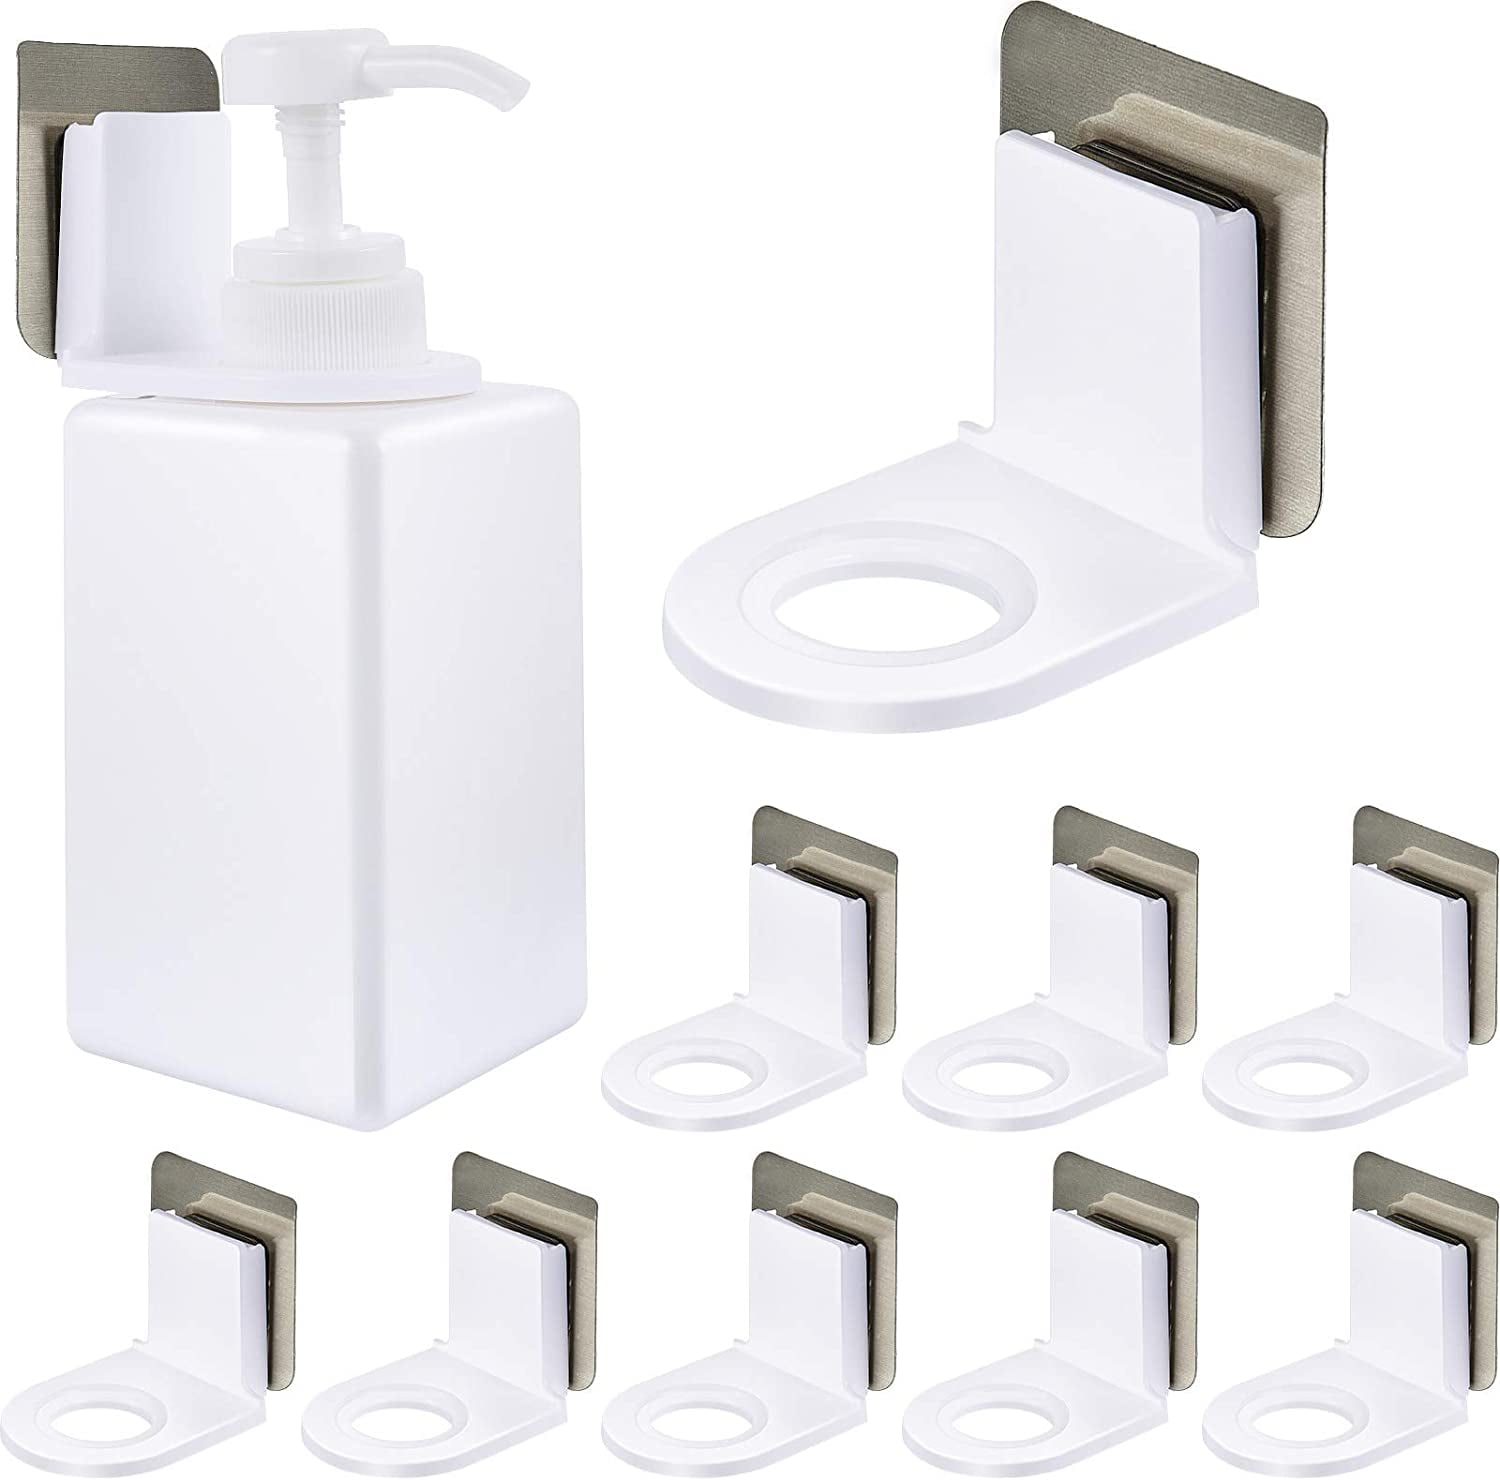 Details about  / Bathroom Rack Shower Shelf Wall Mount Shampoo Towel Bar Kitchen Corner Holder